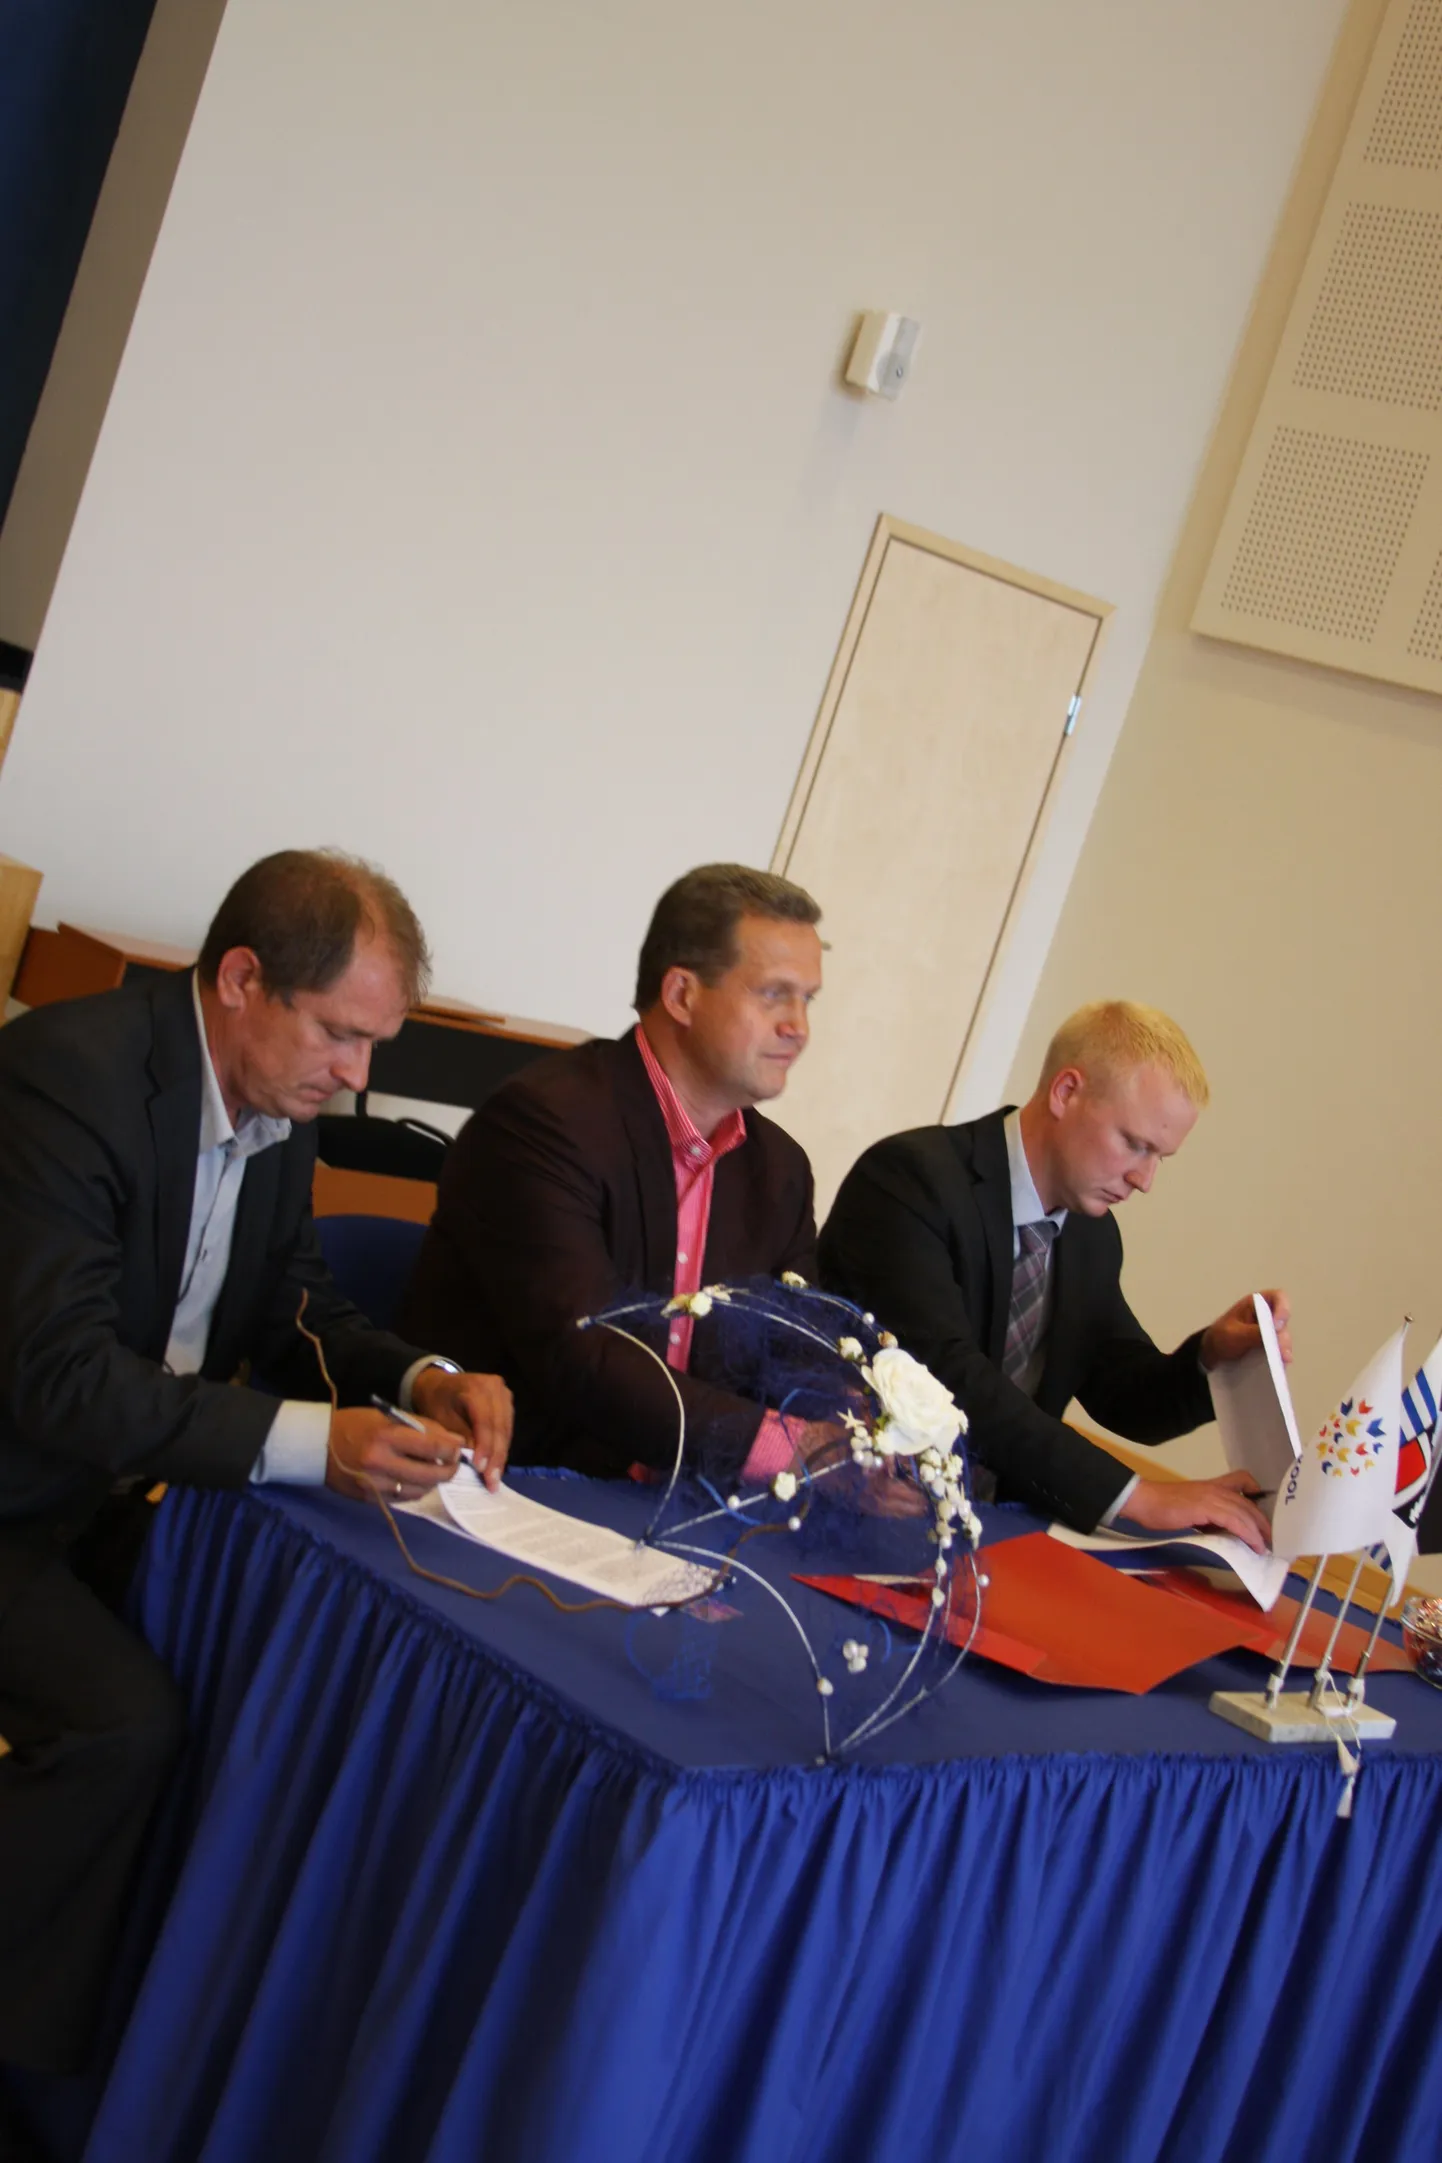 Lepingule kirjutavad alla (paremalt) Rae vallavanem Mart Võrklaev, ASi Koger Projektijuhtimine esindaja Andres Koger ja OÜ KRTL esindaja Toomas Ruus.